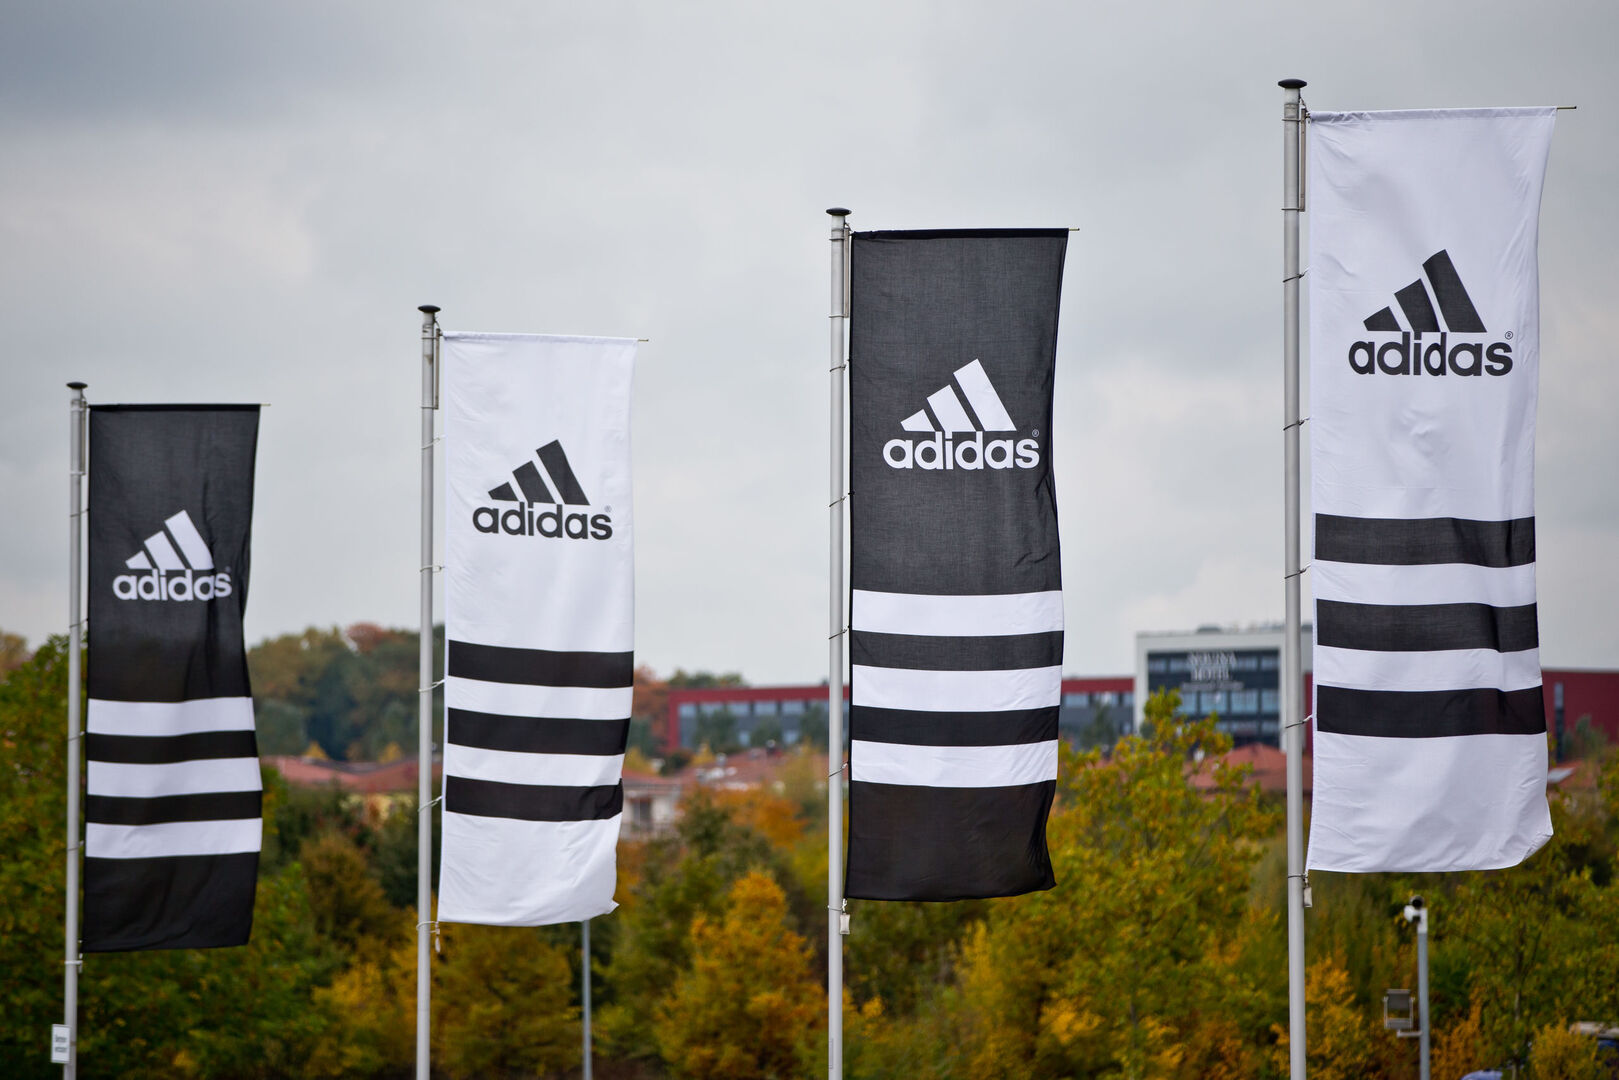 Adidas gana casi siete veces más hasta septiembre pesar de los problemas de suministro - Libre Mercado